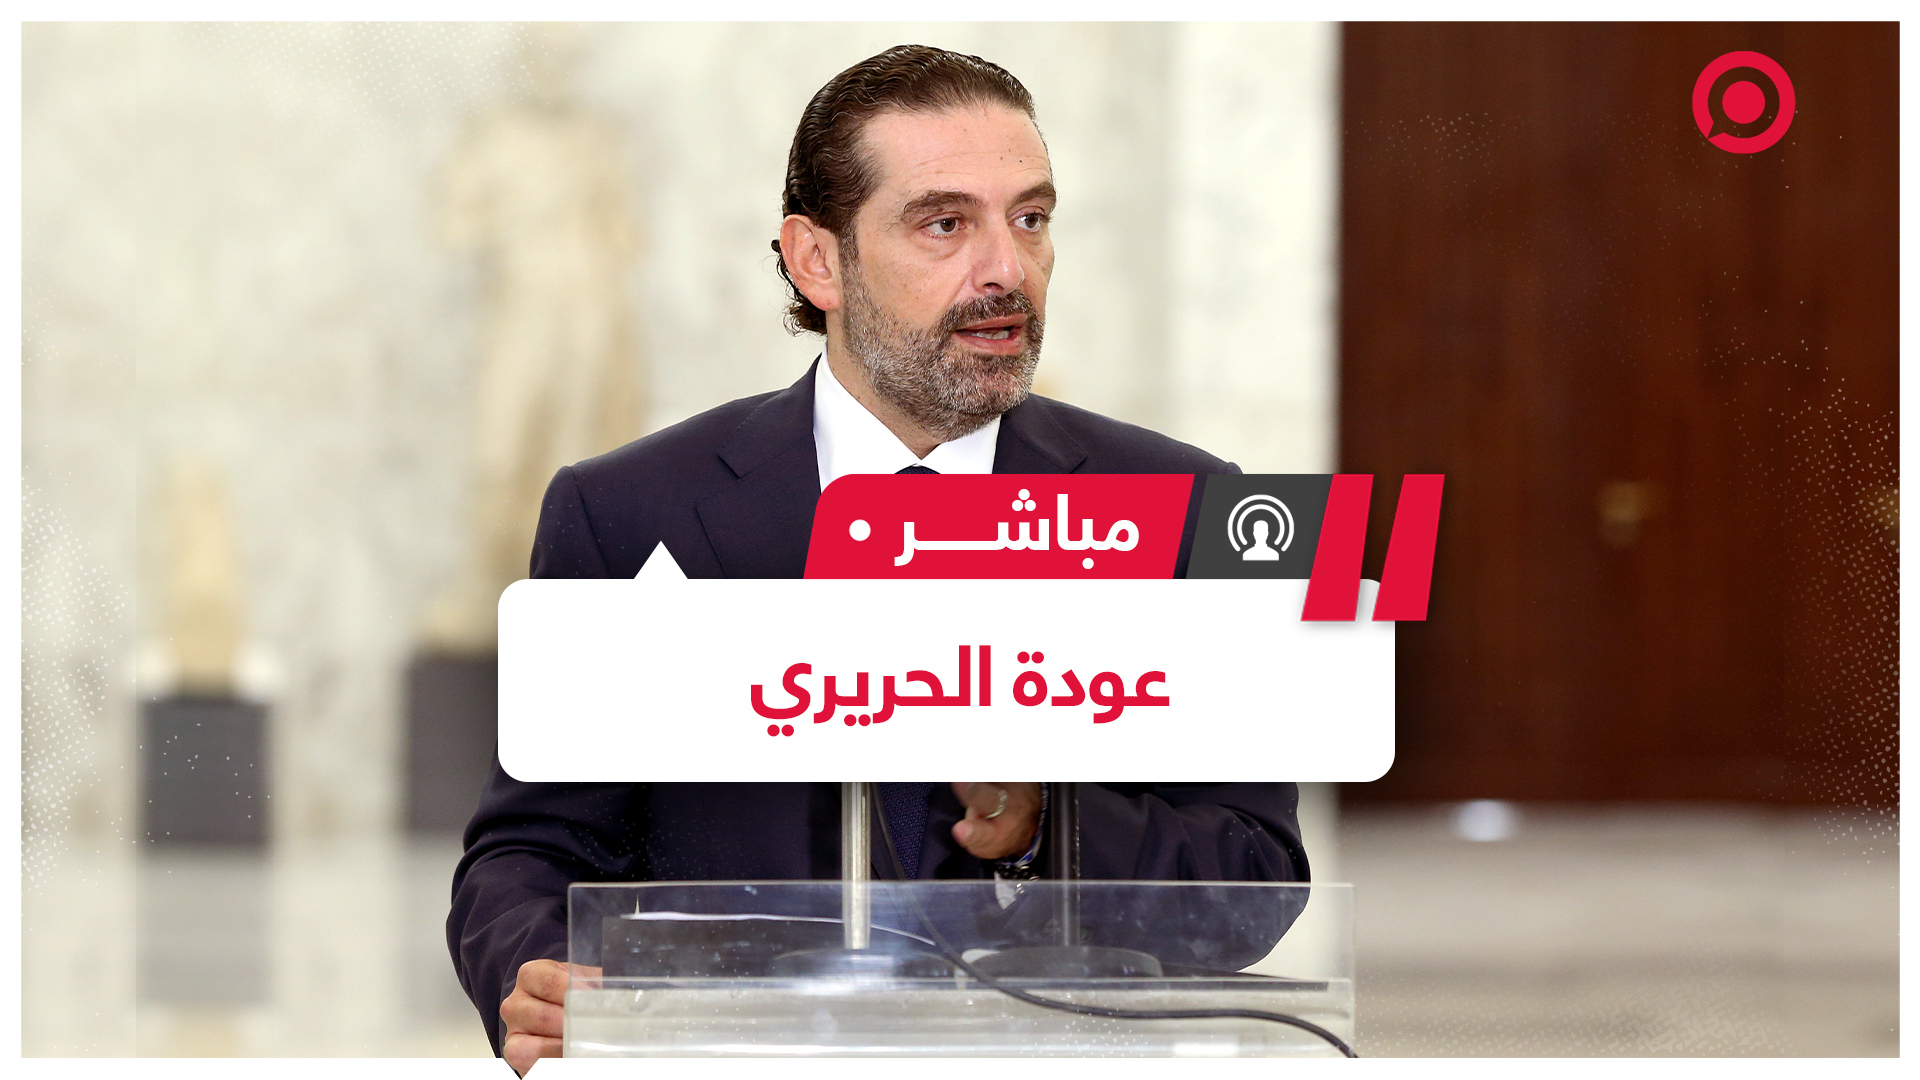 الرئيس اللبناني يكلف الحريري بتشكيل الحكومة.. ما رد فعل الشارع اللبناني؟